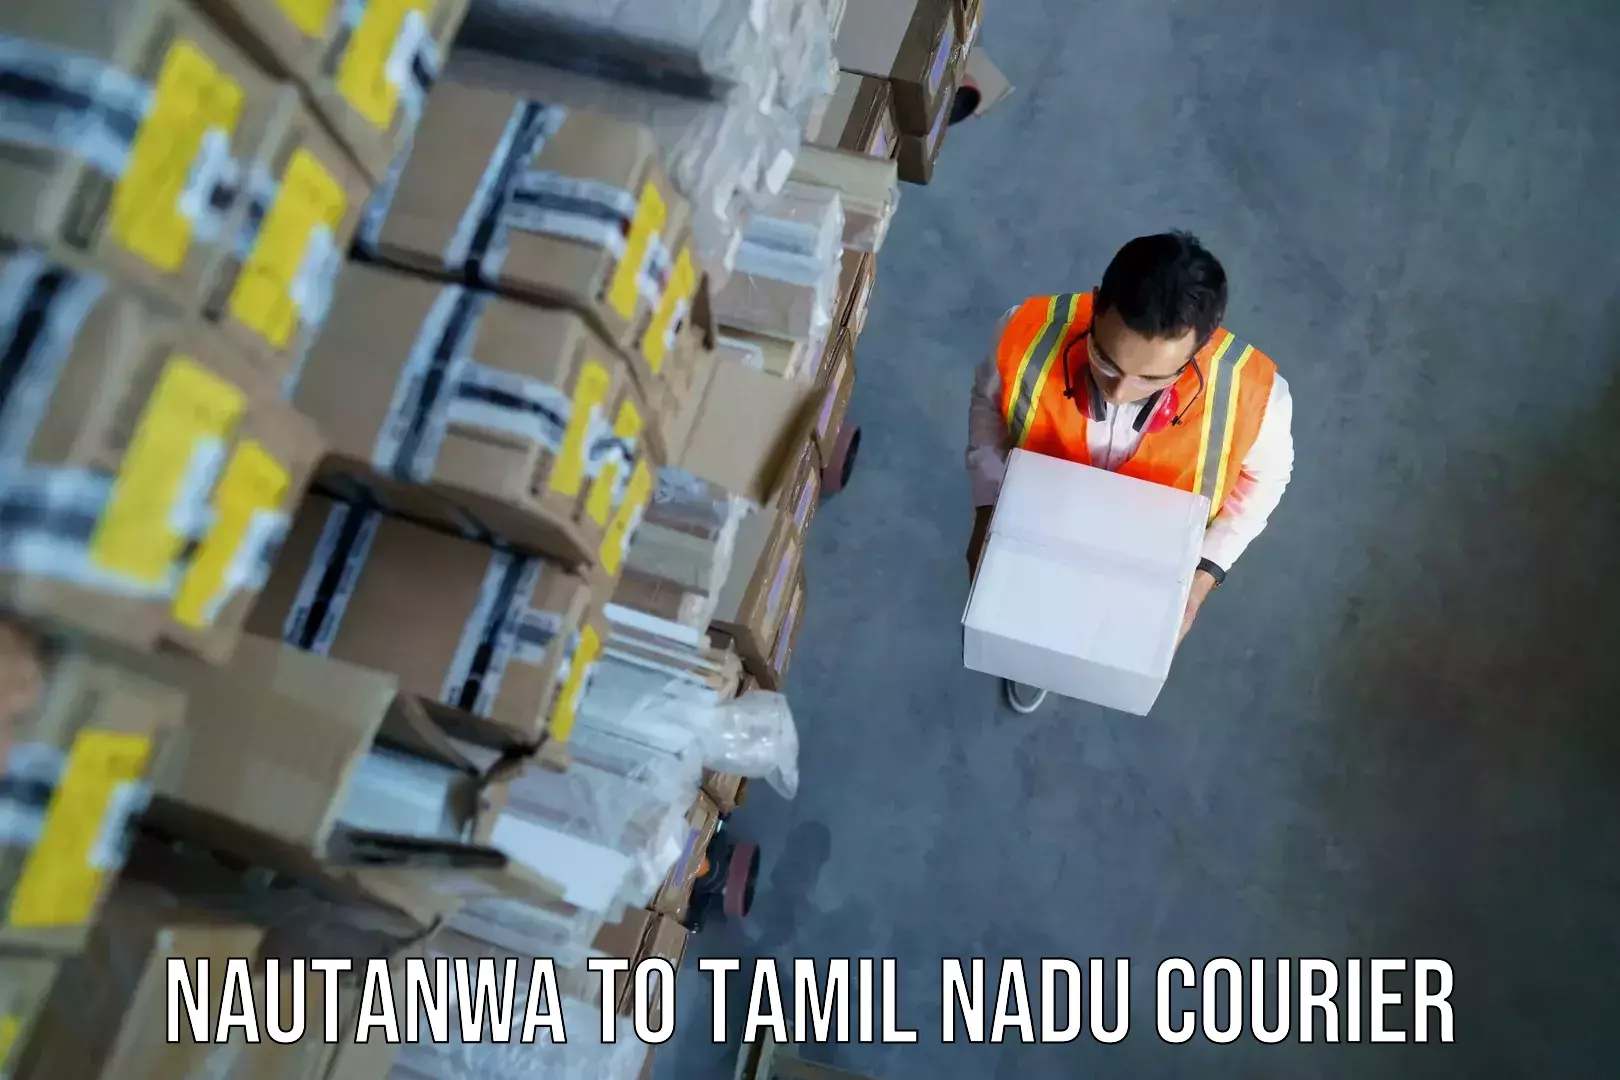 Nationwide luggage courier Nautanwa to Thirukkattupalli